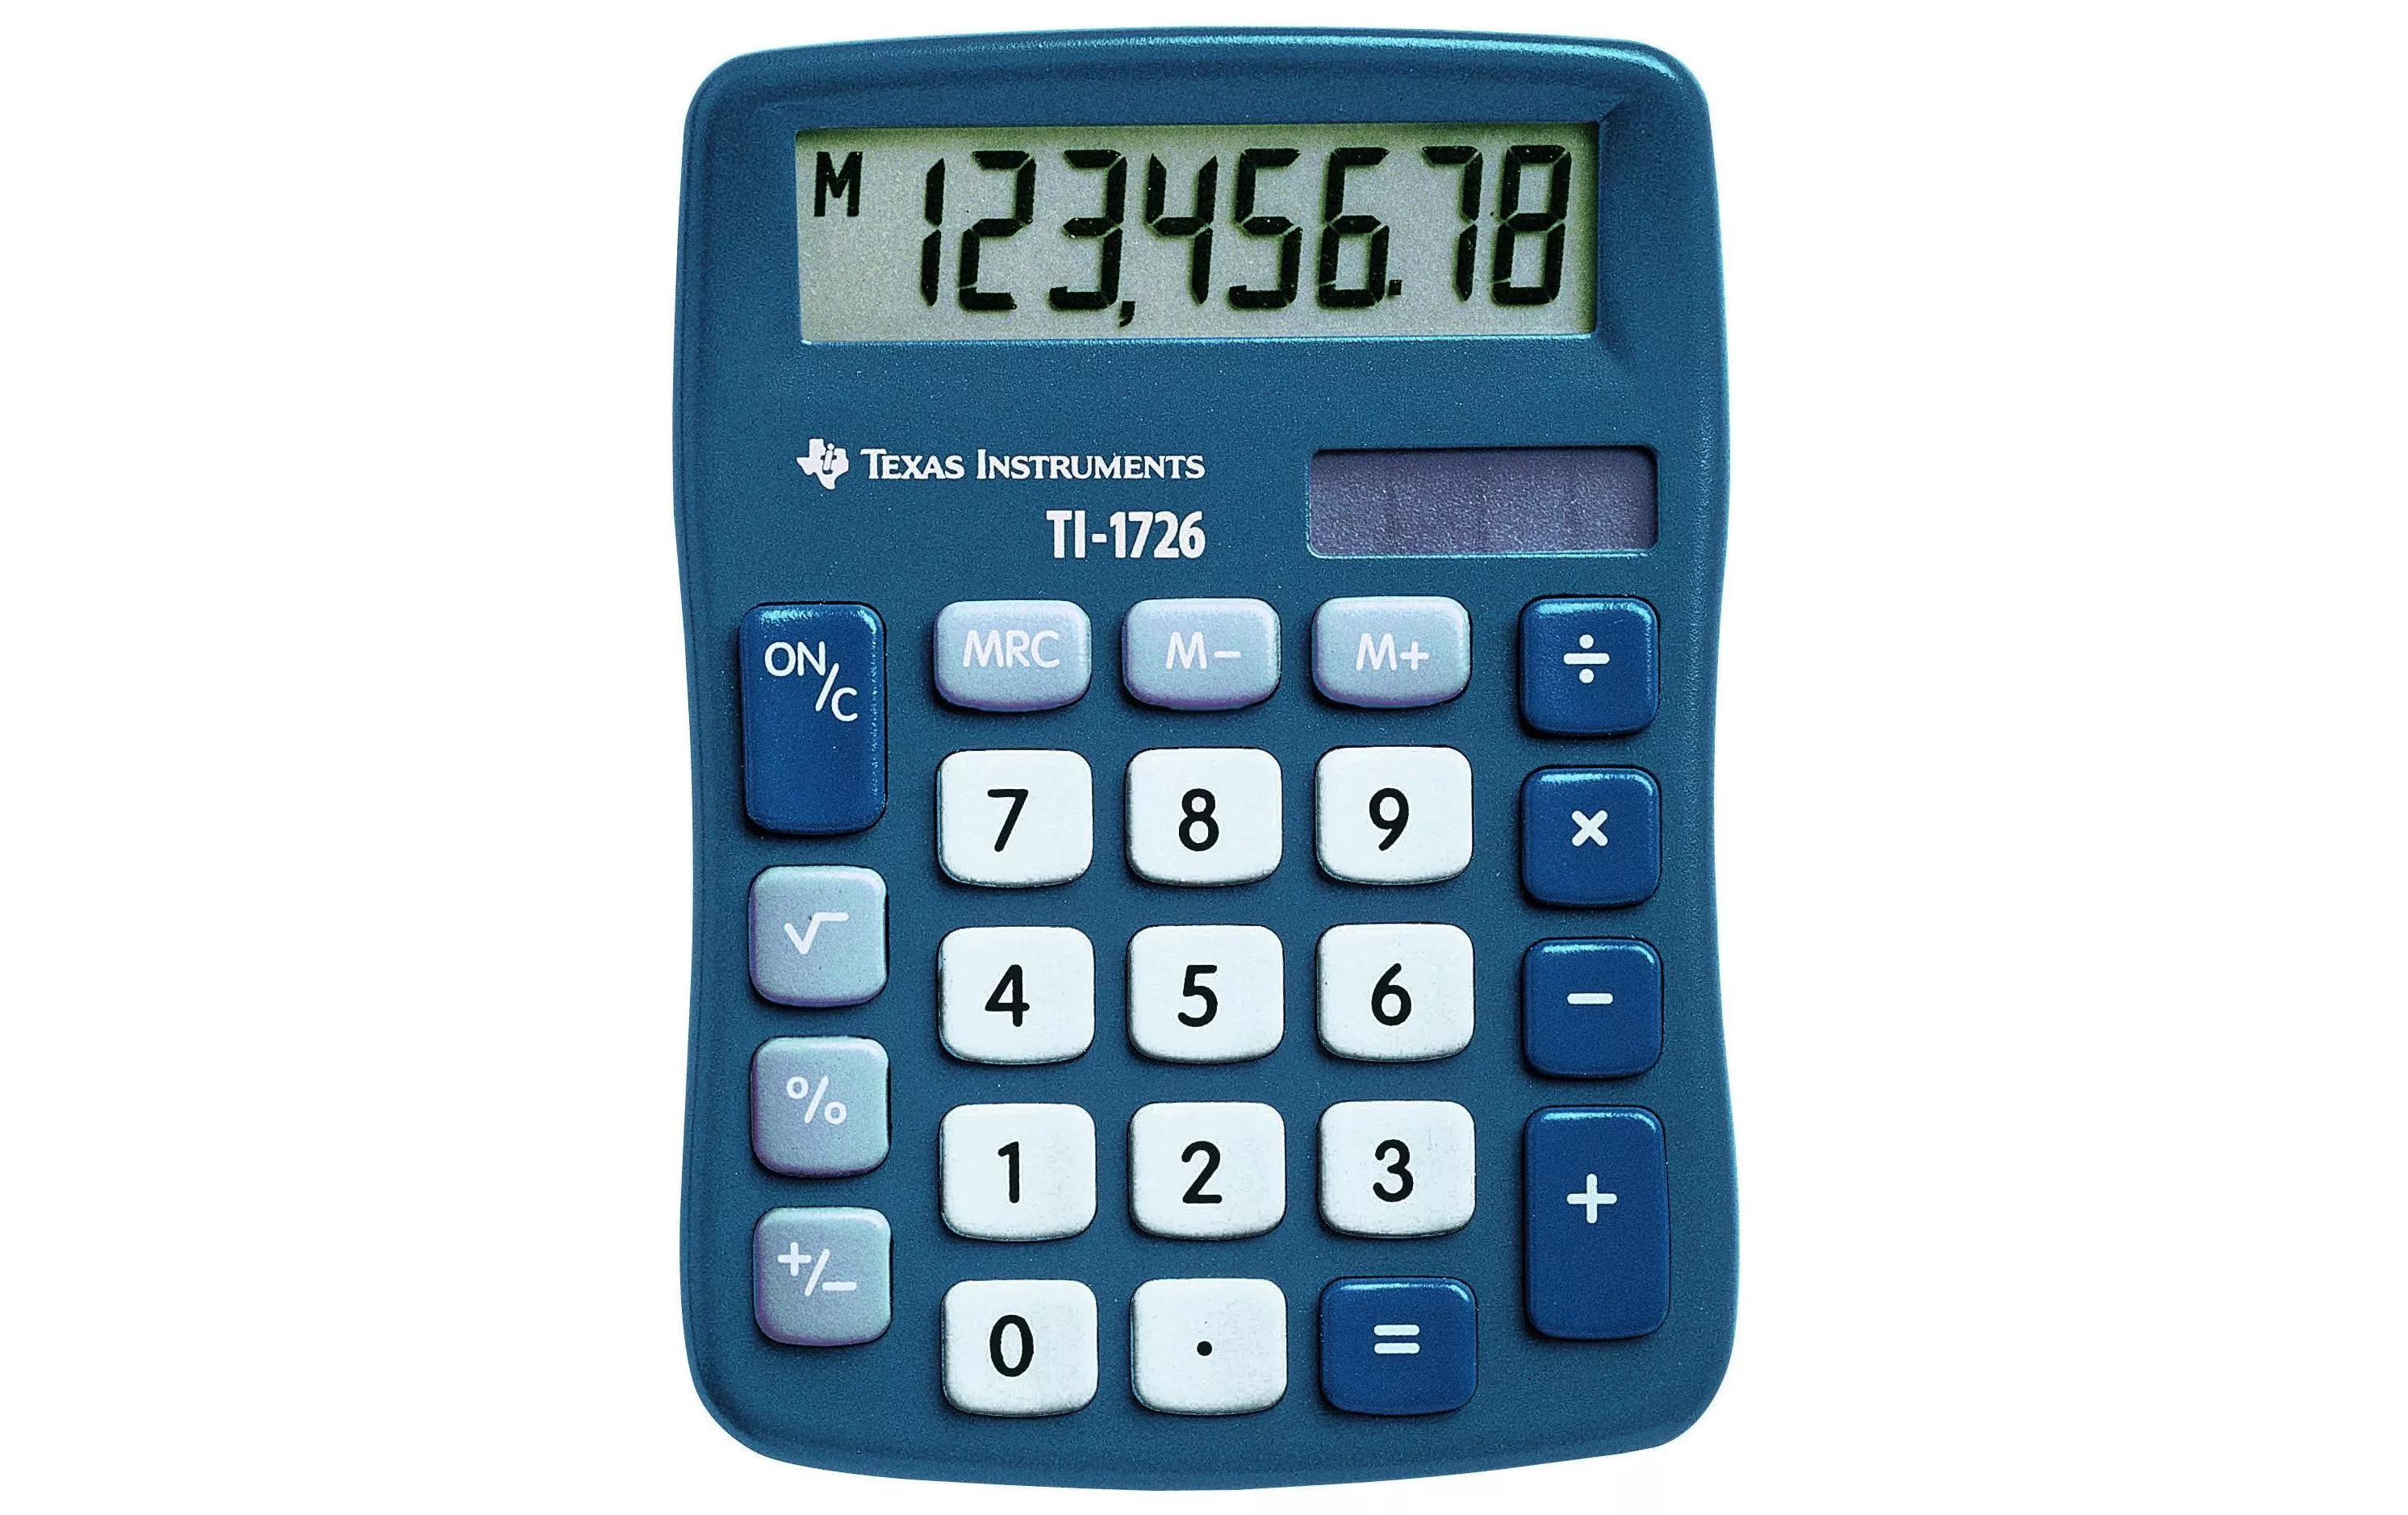 Calculatrice TI-1726